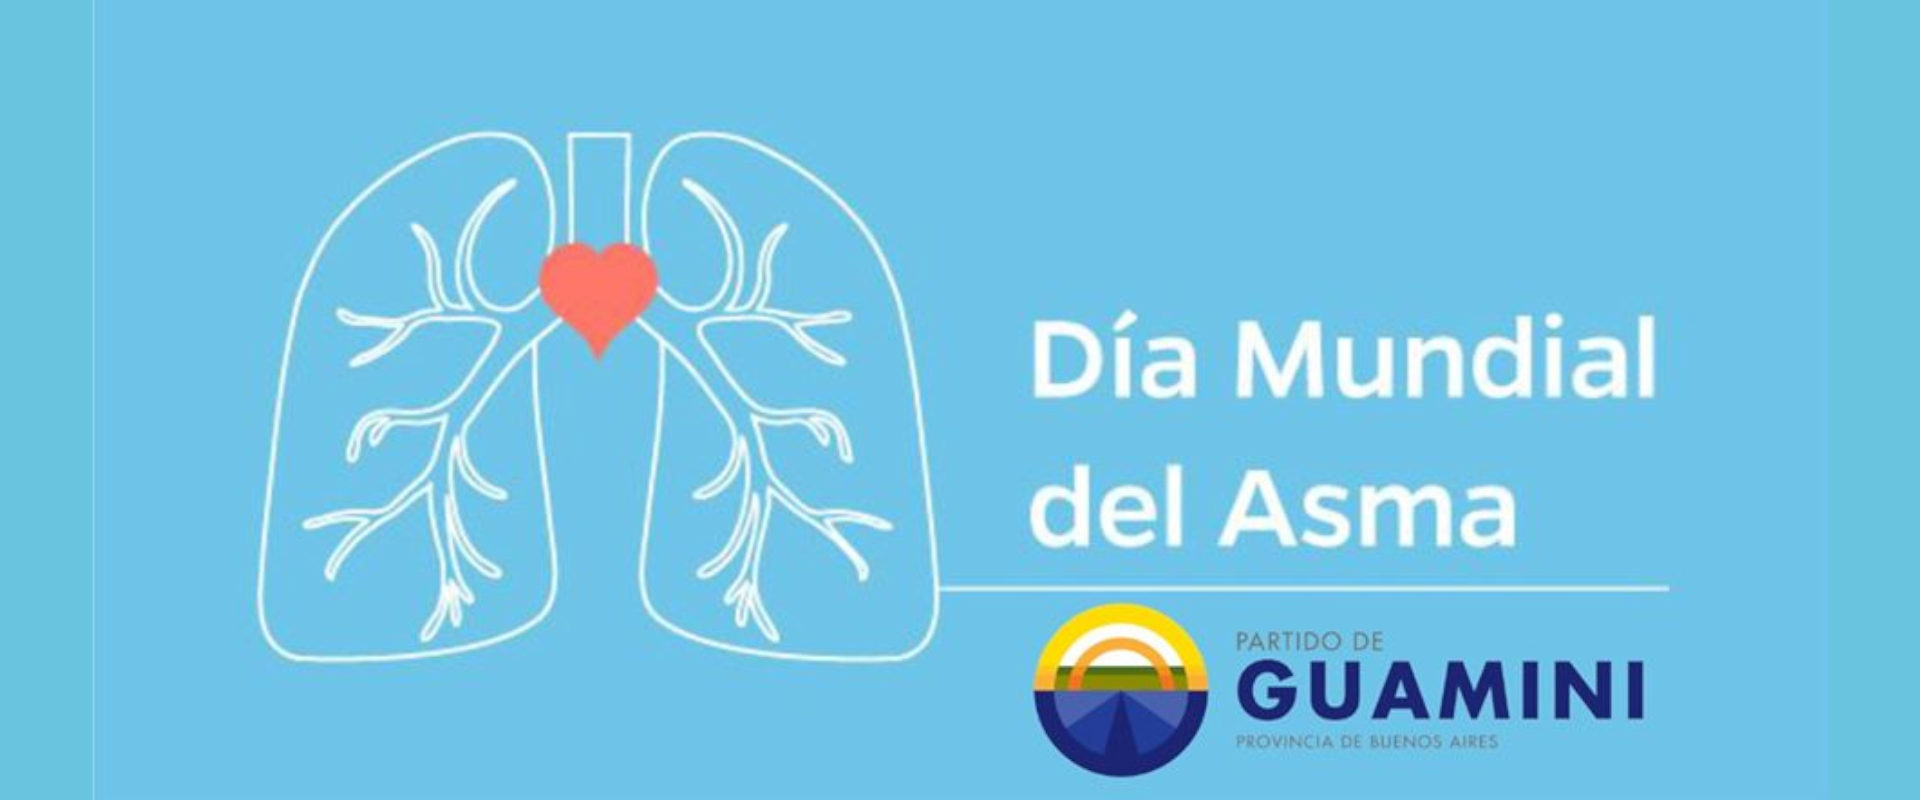 5 de mayo - día mundial del asma